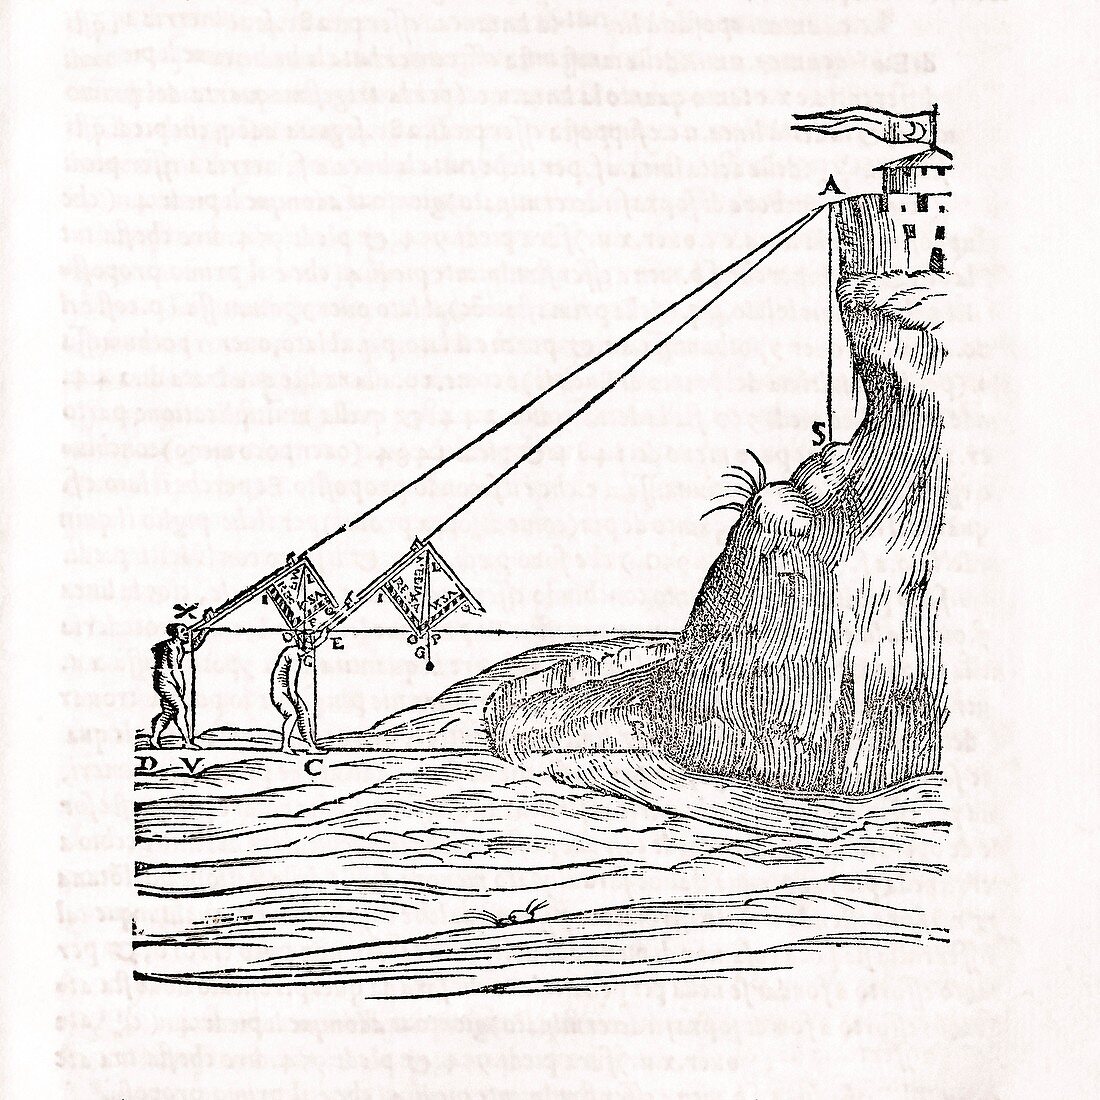 Tartaglia on ballistics, 16th century